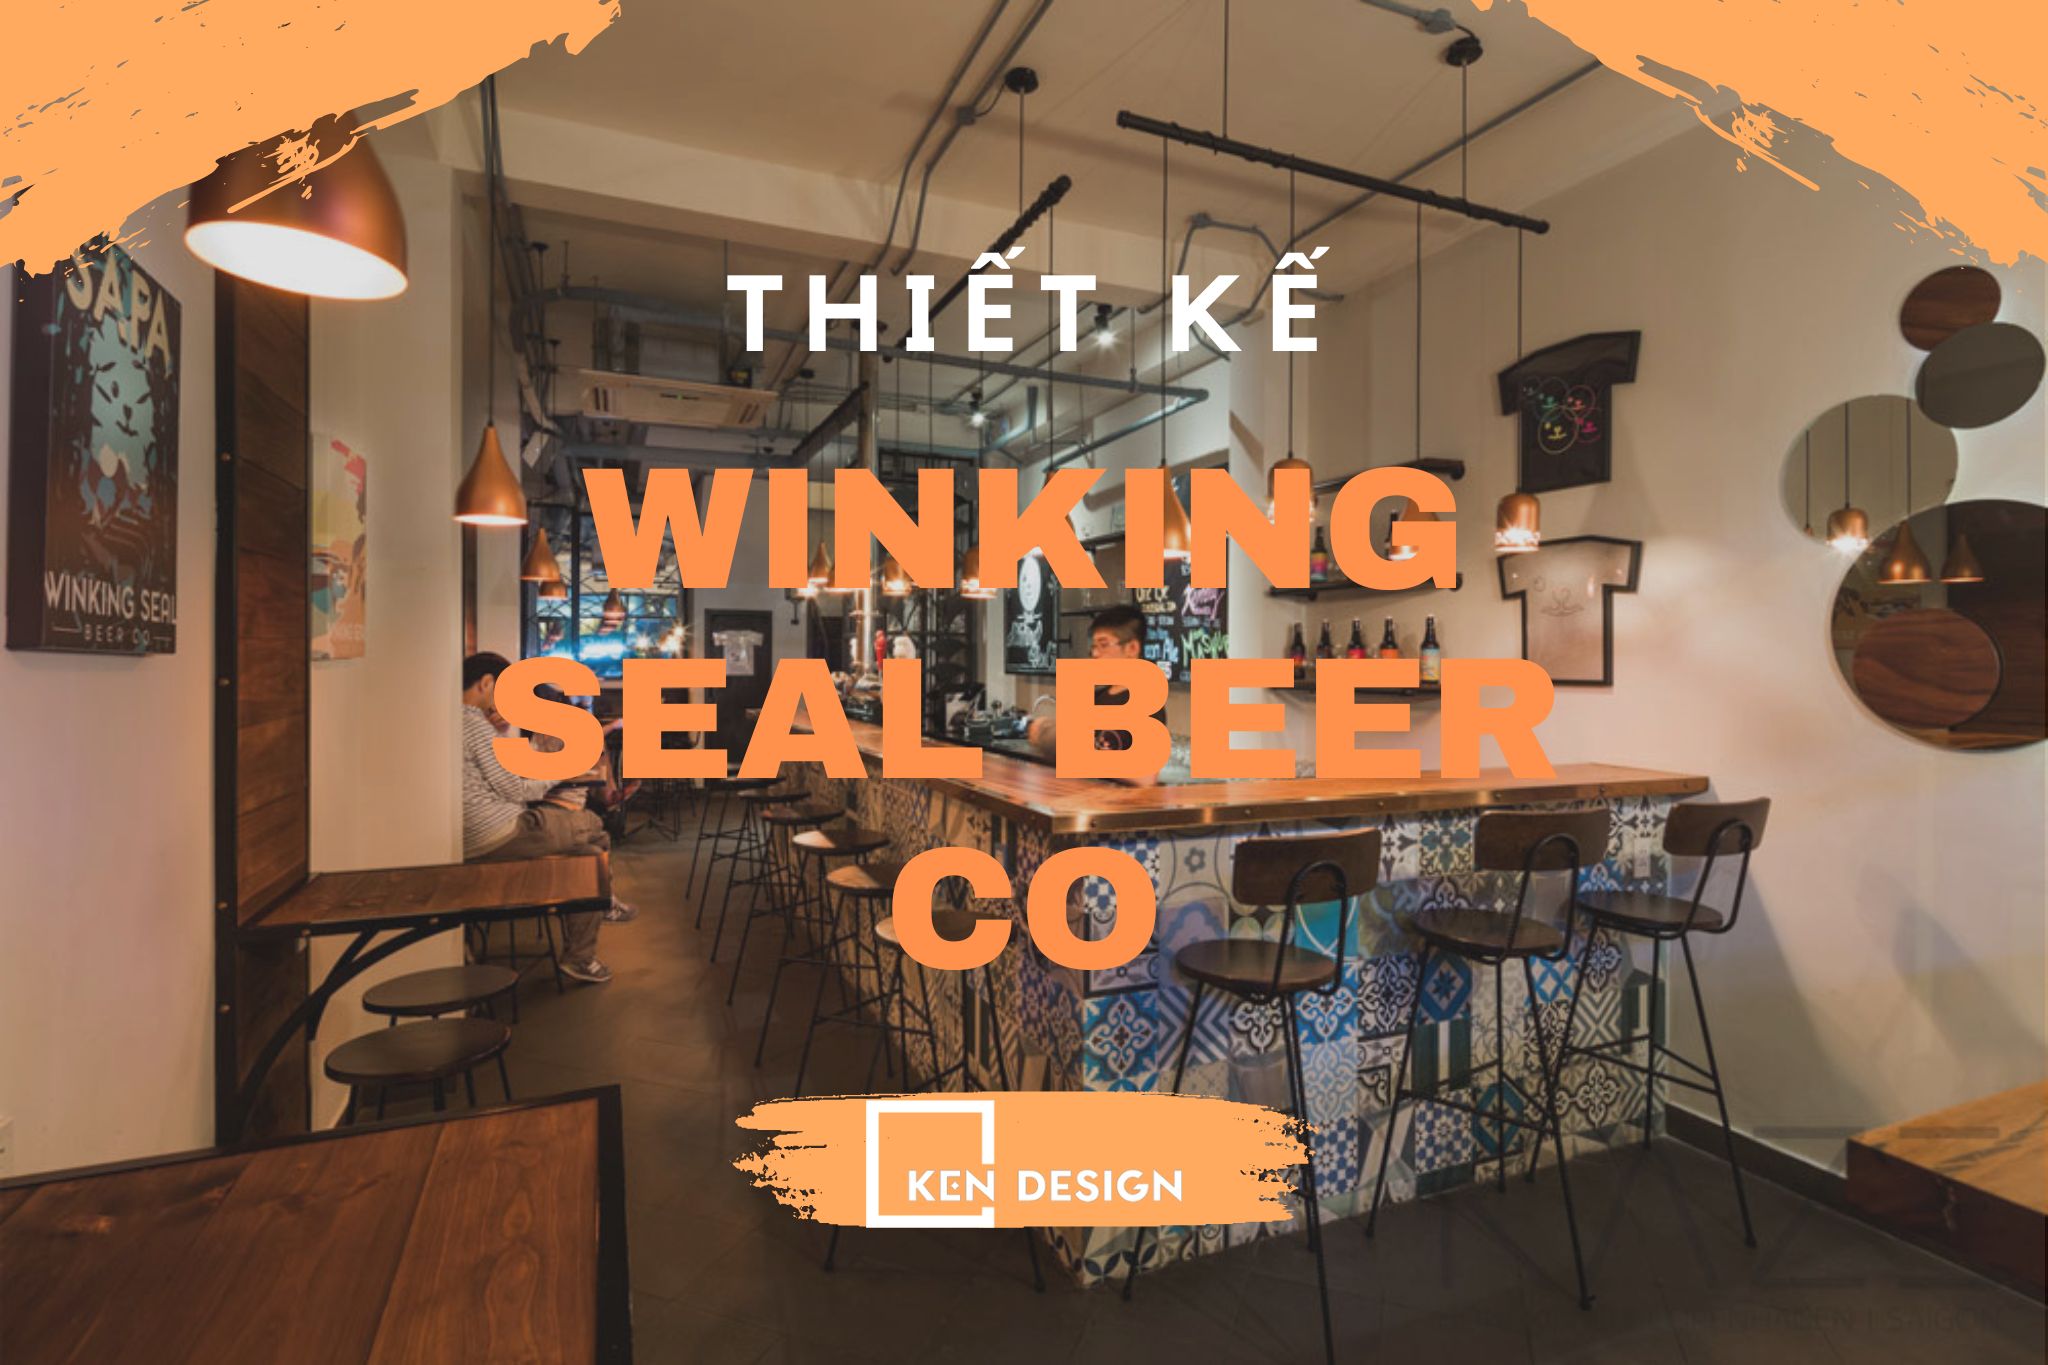 Thiết kế Winking Seal Beer Co - sự kết hợp của ánh sáng và âm nhạc